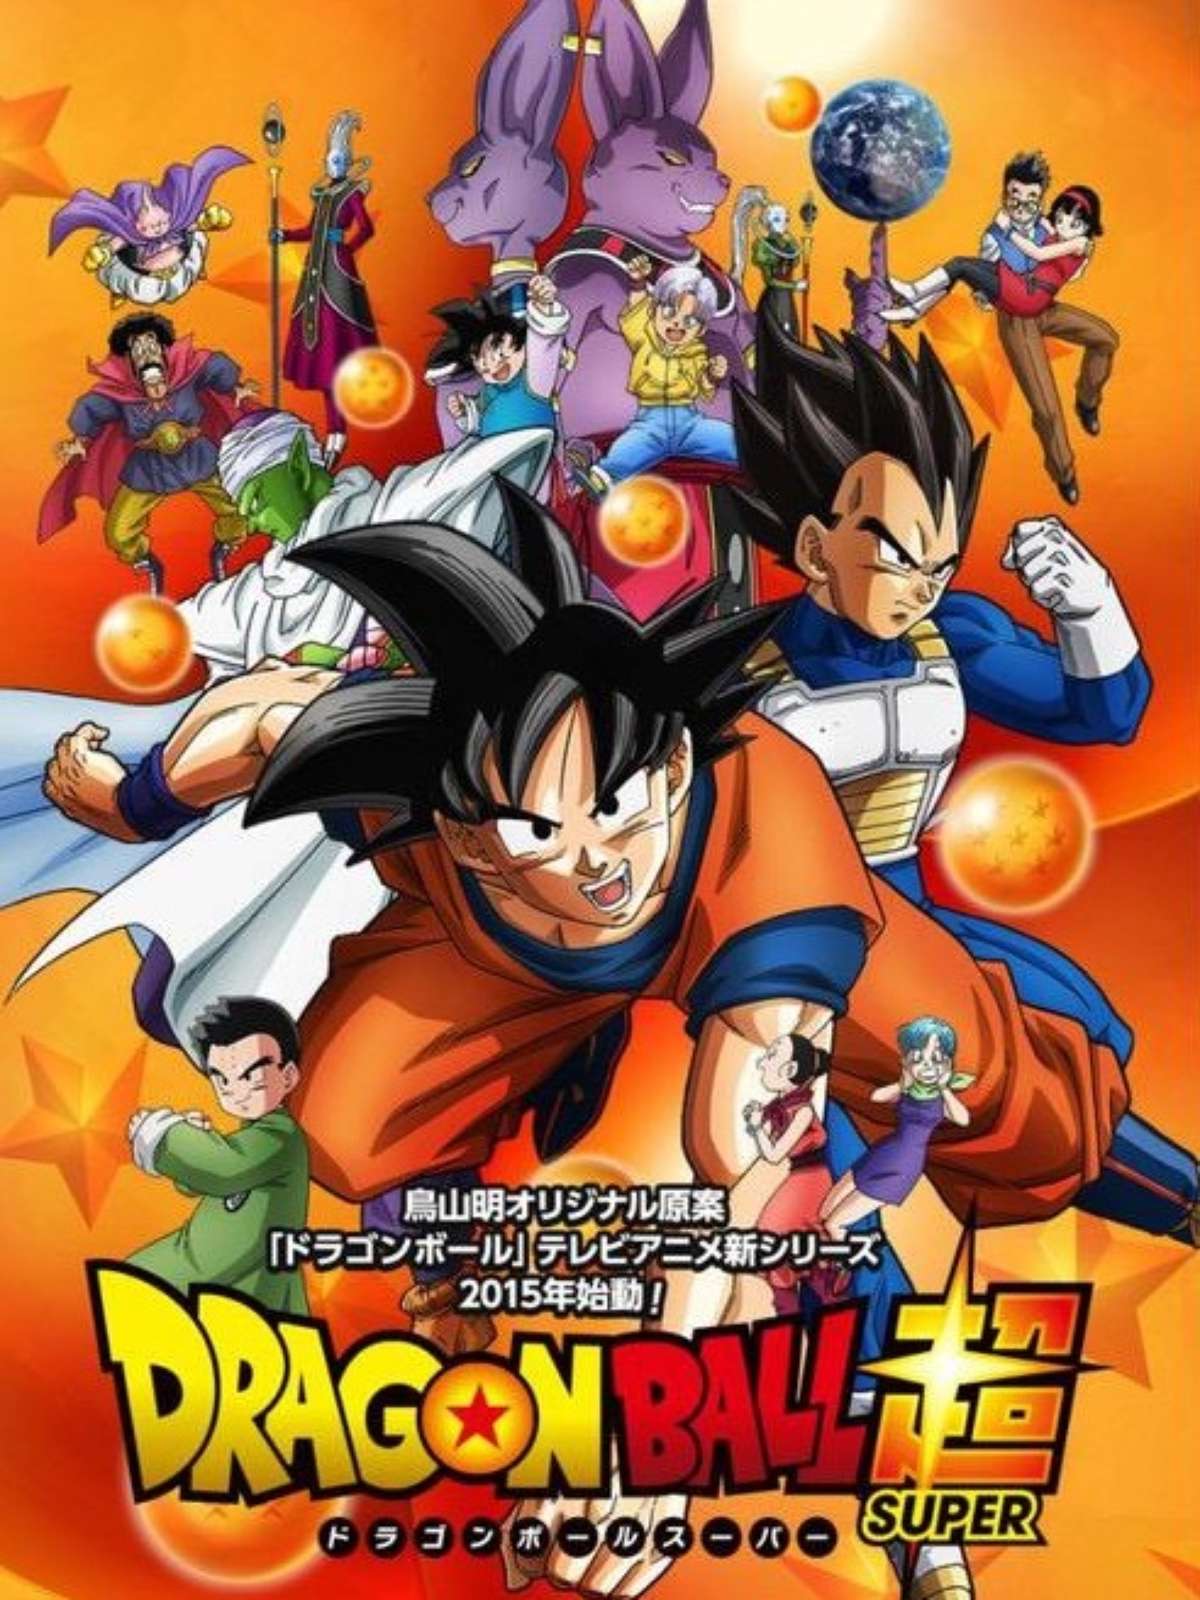 Exclusivo - Pré-estreia de Dragon Ball Z e entrevista com o